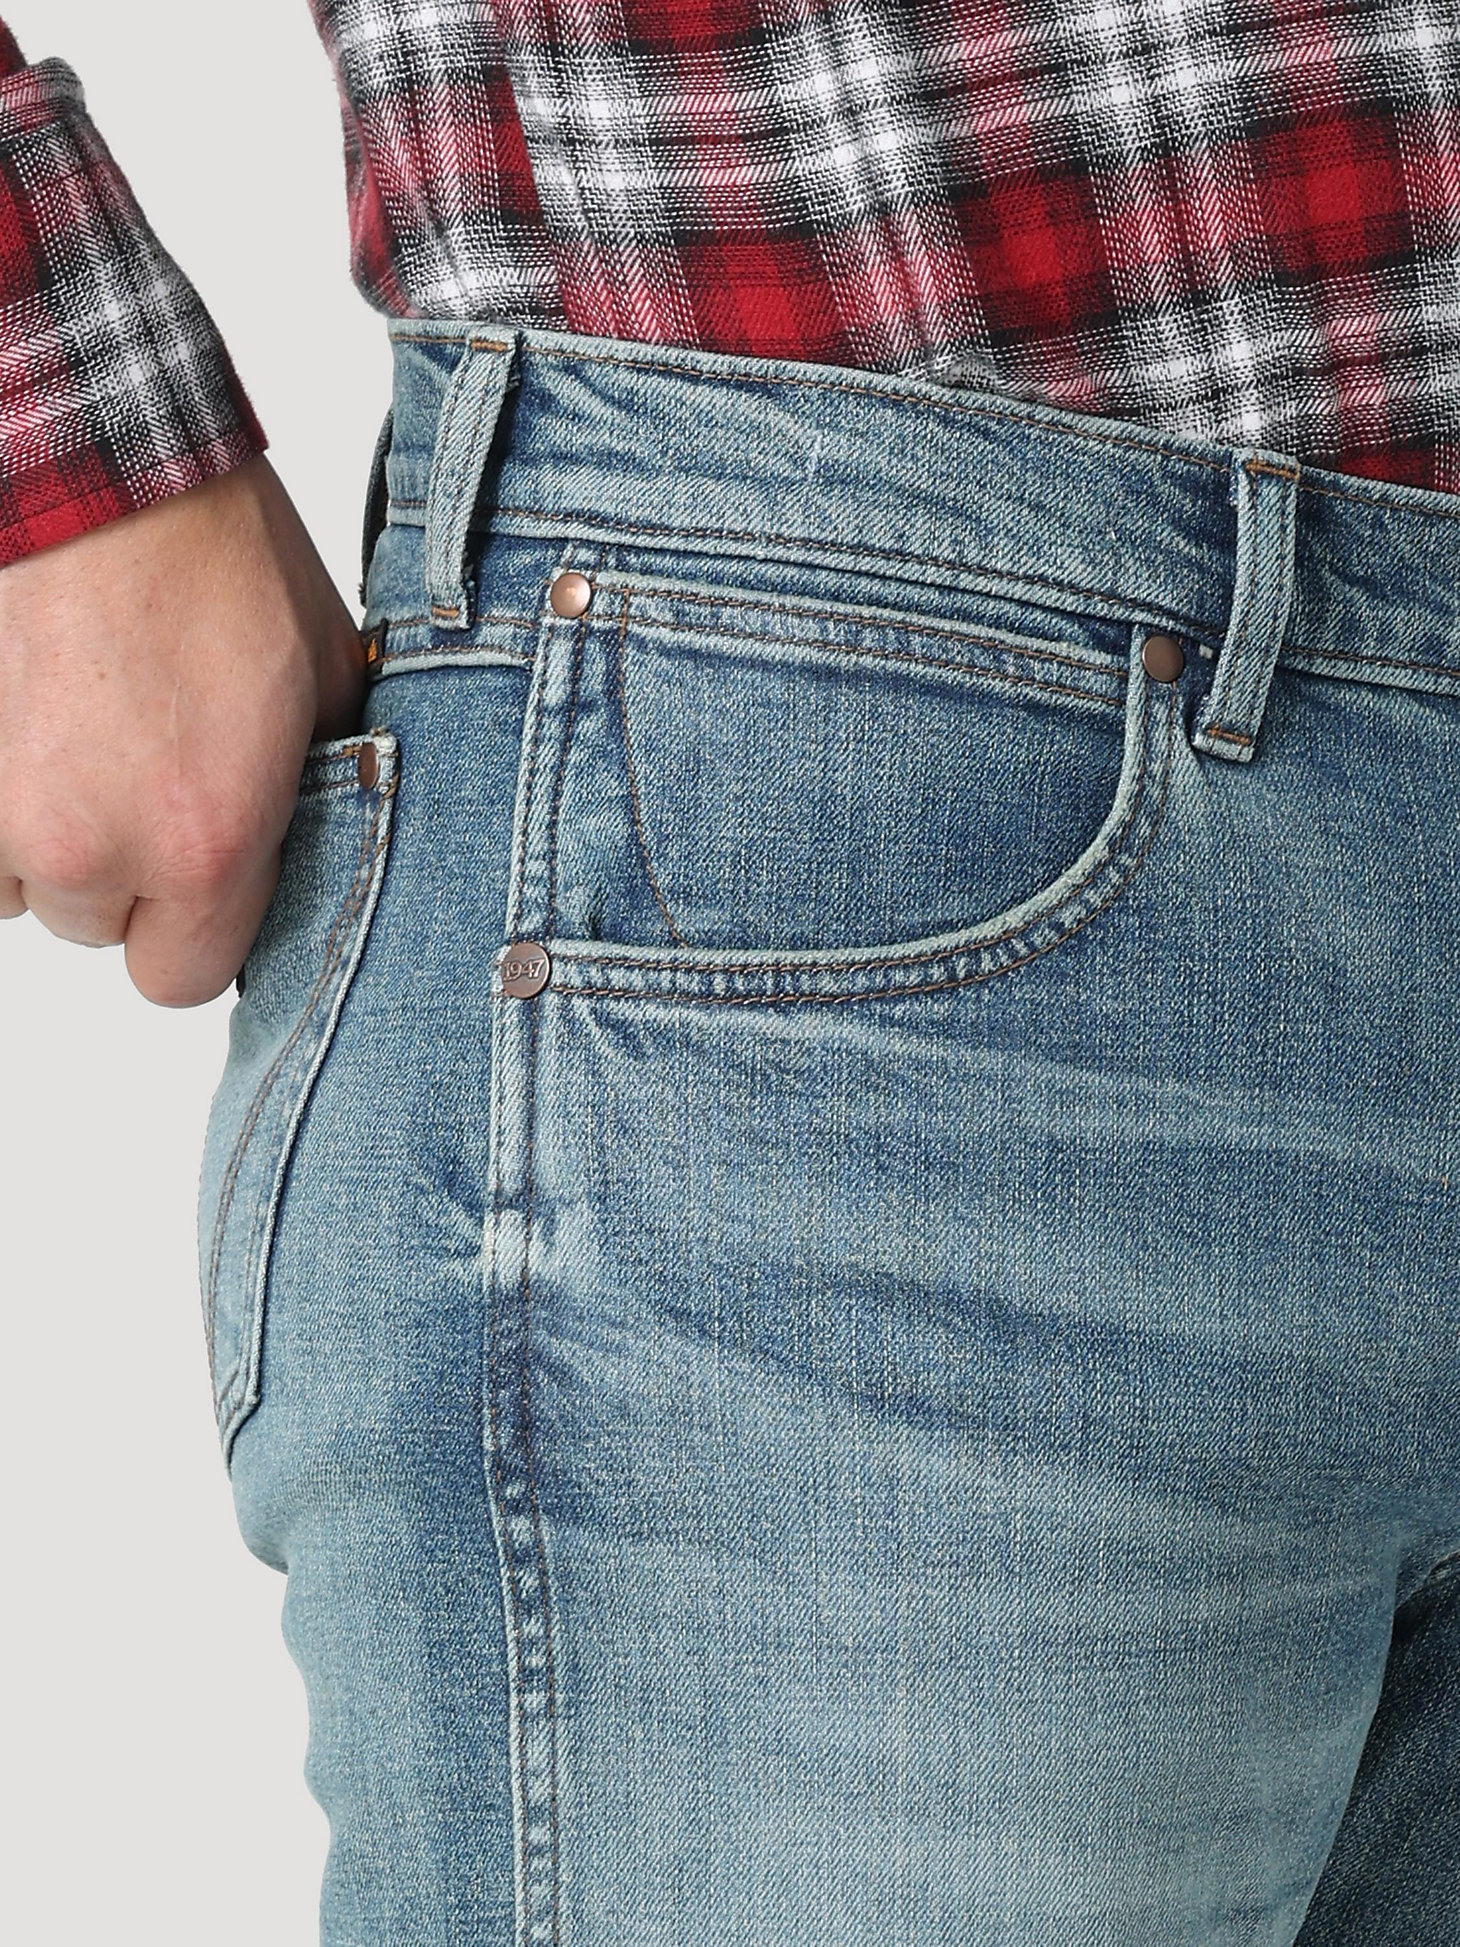 The Wrangler Retro® Premium Jean: Men's Slim Boot in Valley alternative view 4